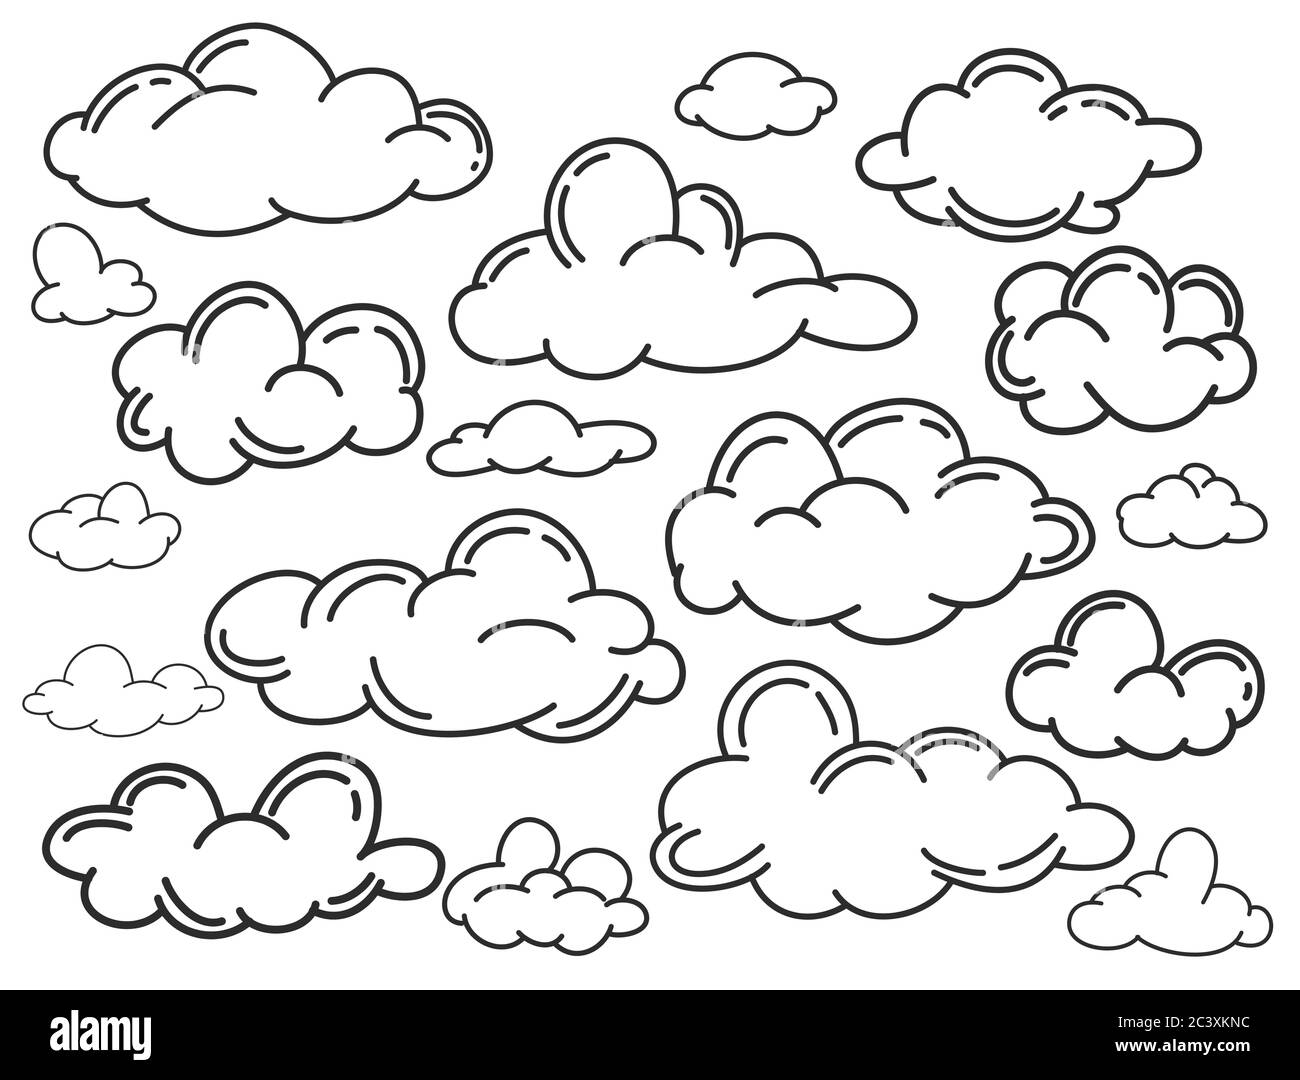 Disegnare a mano la collezione meteo. Illustrazione vettoriale di stile piatto. Nubi doodle Set. Contorno del paesaggio nuvoloso stilizzato nel cielo. Illustrazione Vettoriale